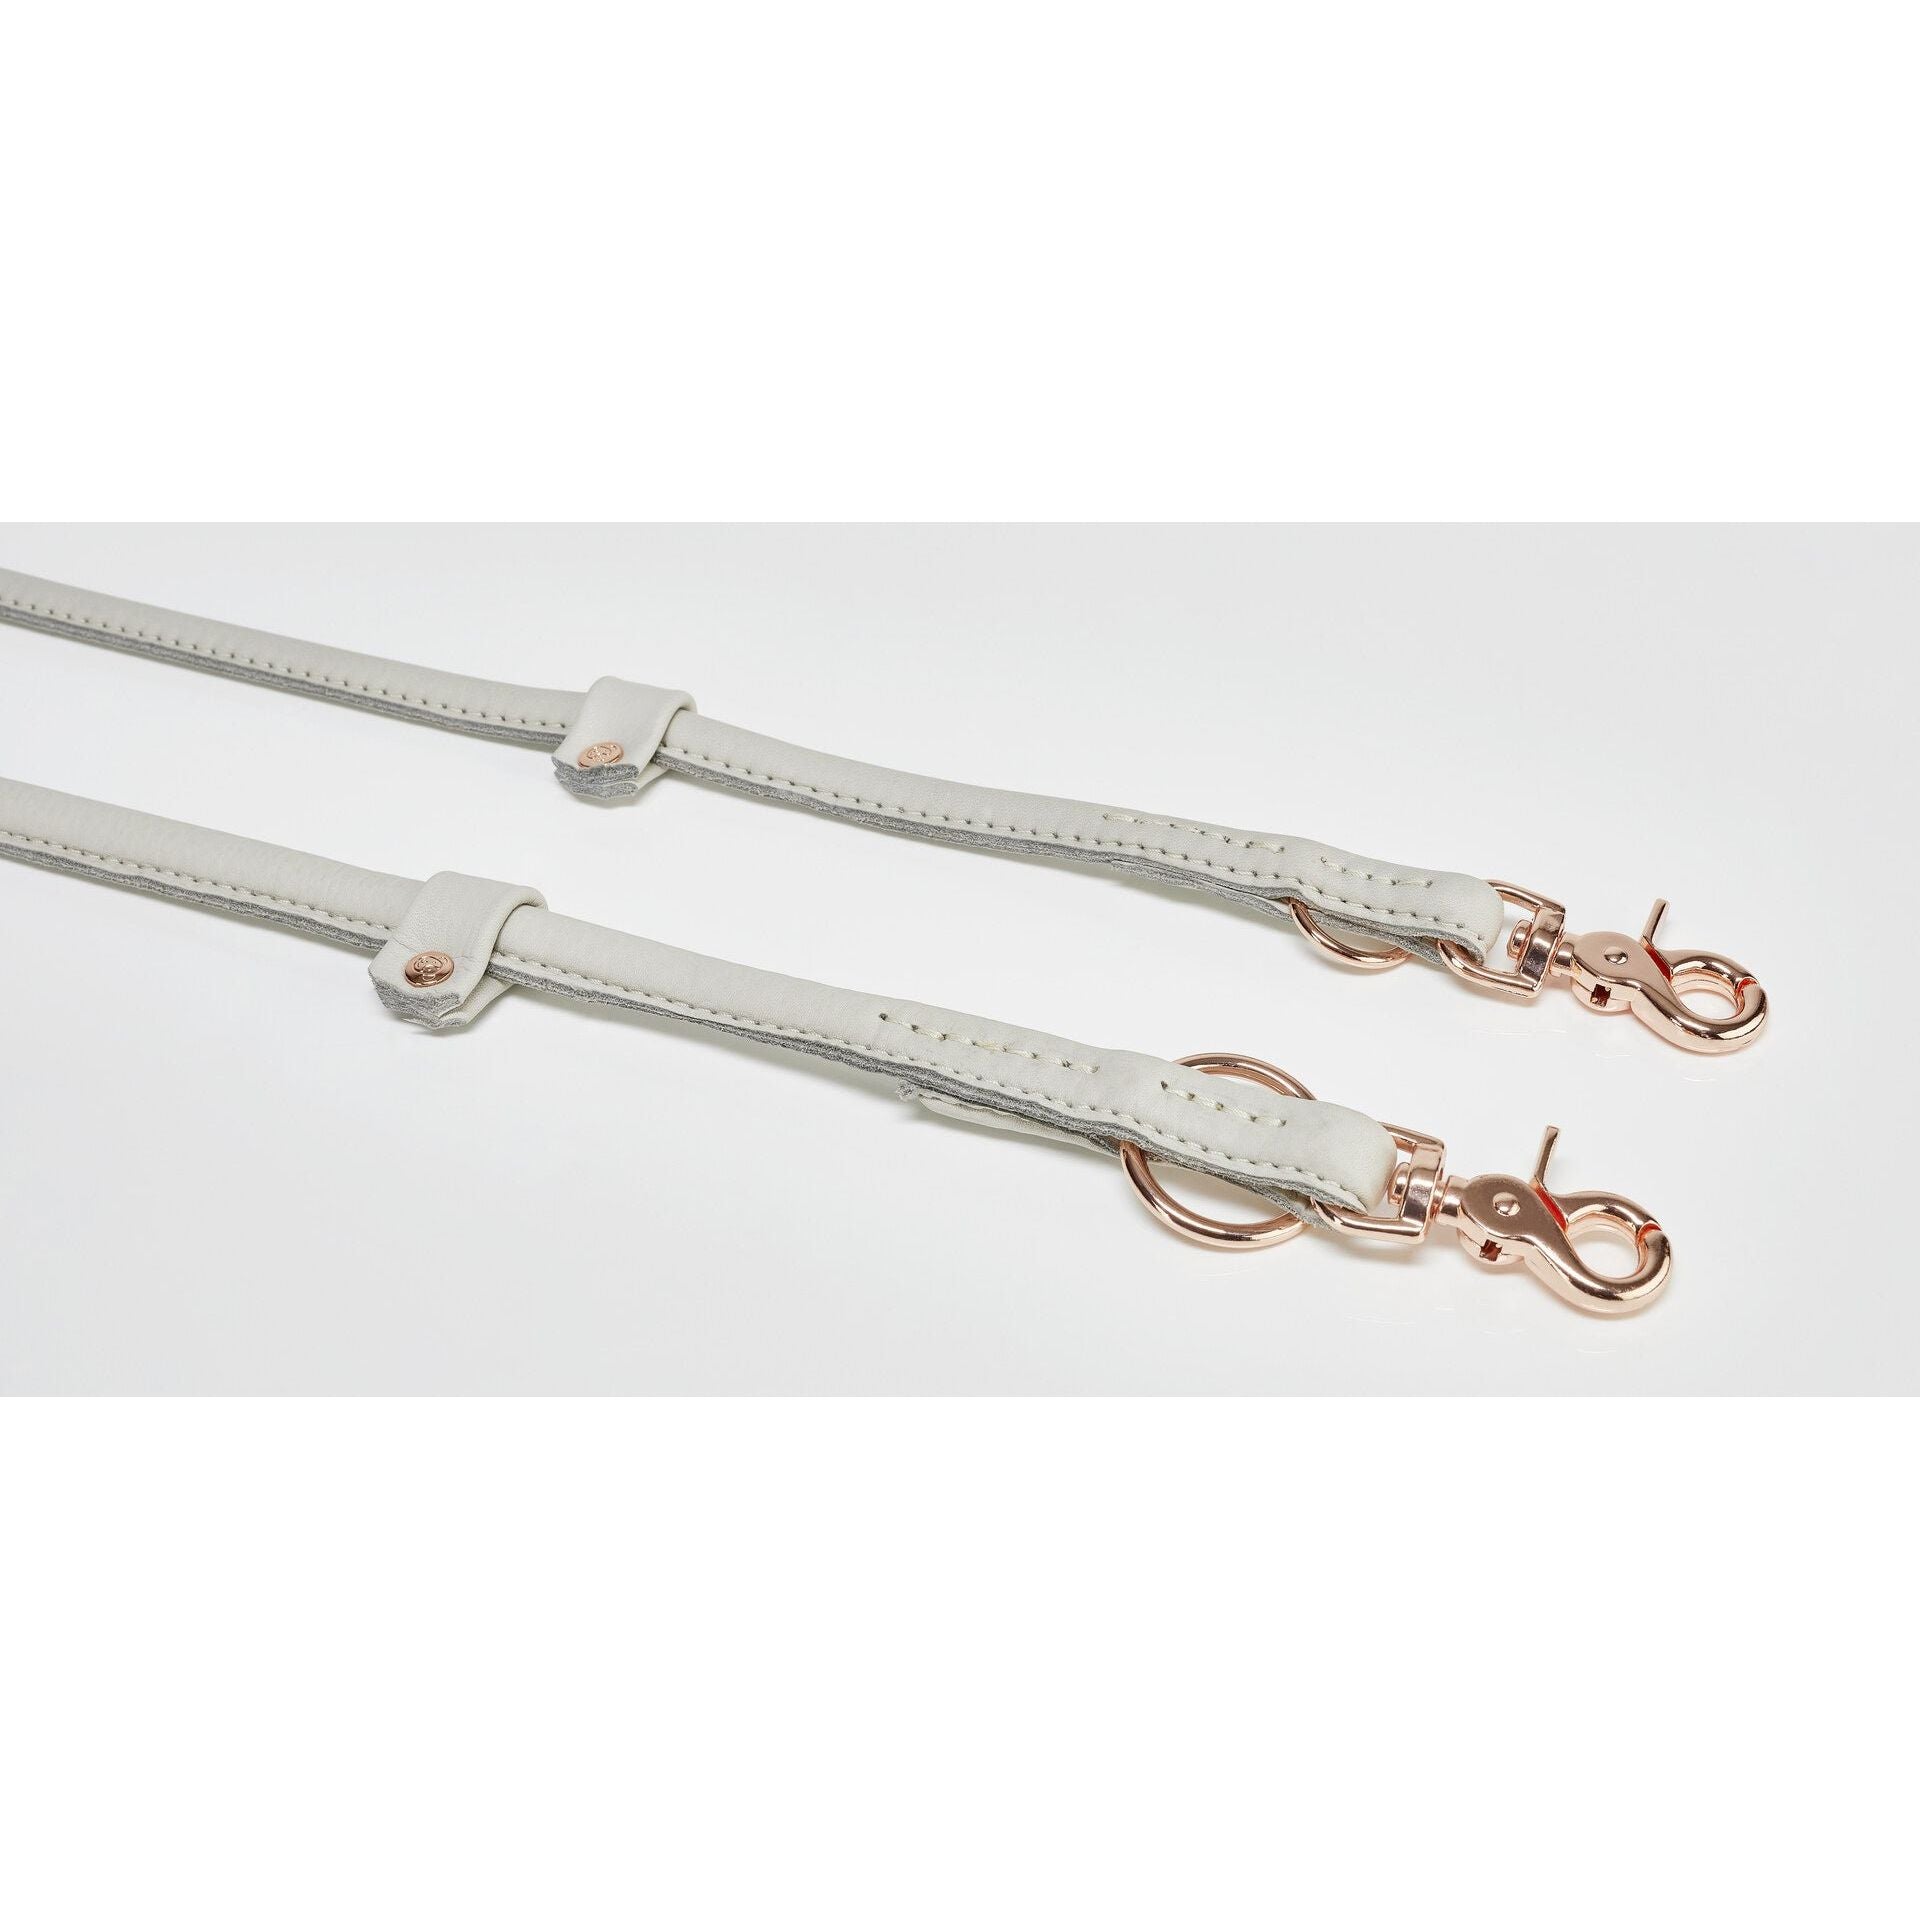 LABONI AMICI - Stylishe Halsband-Leinen-Kombination für ein echtes Fashion-Statement! - Askmy4Cats